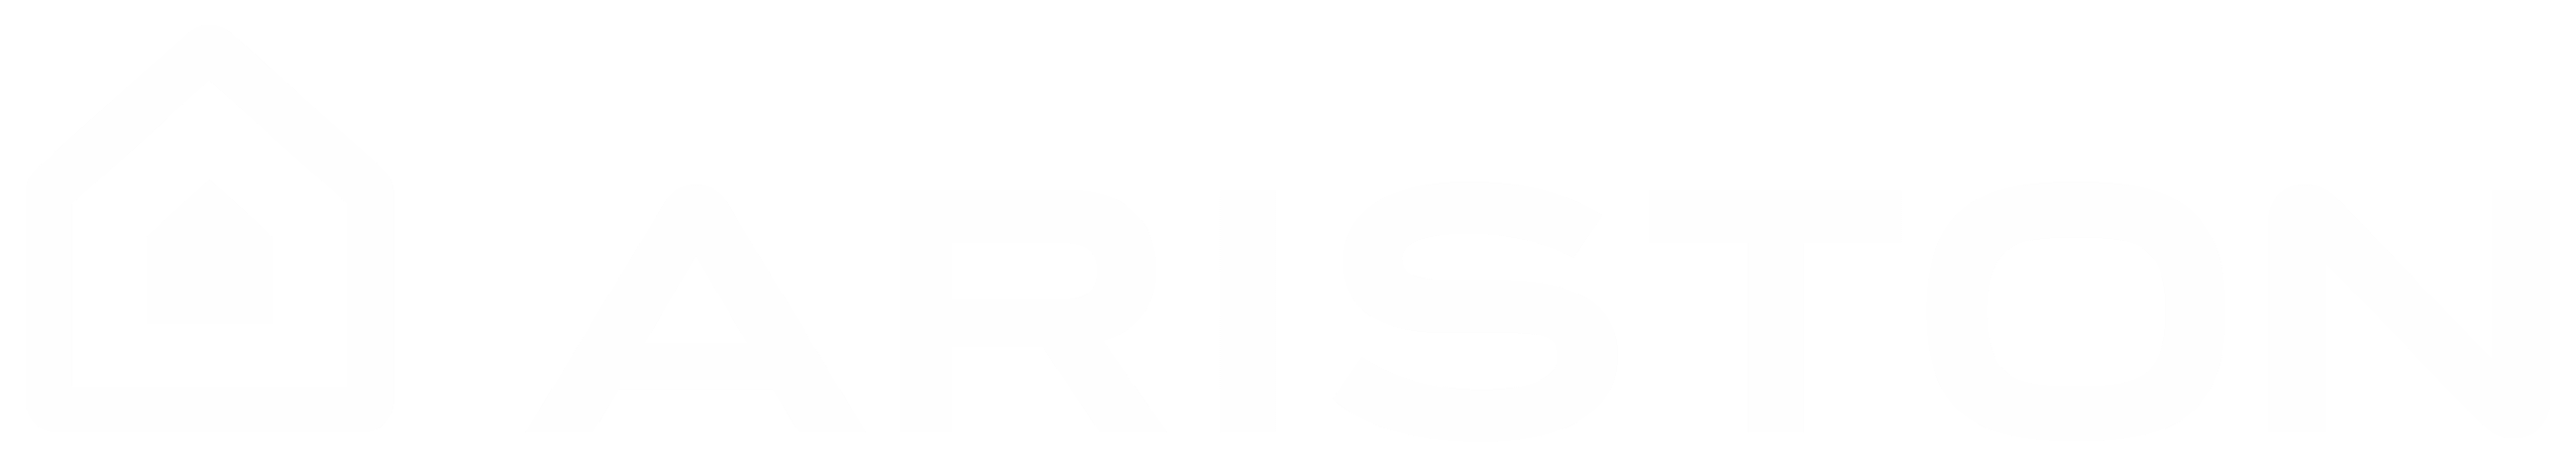 Ariston logo white